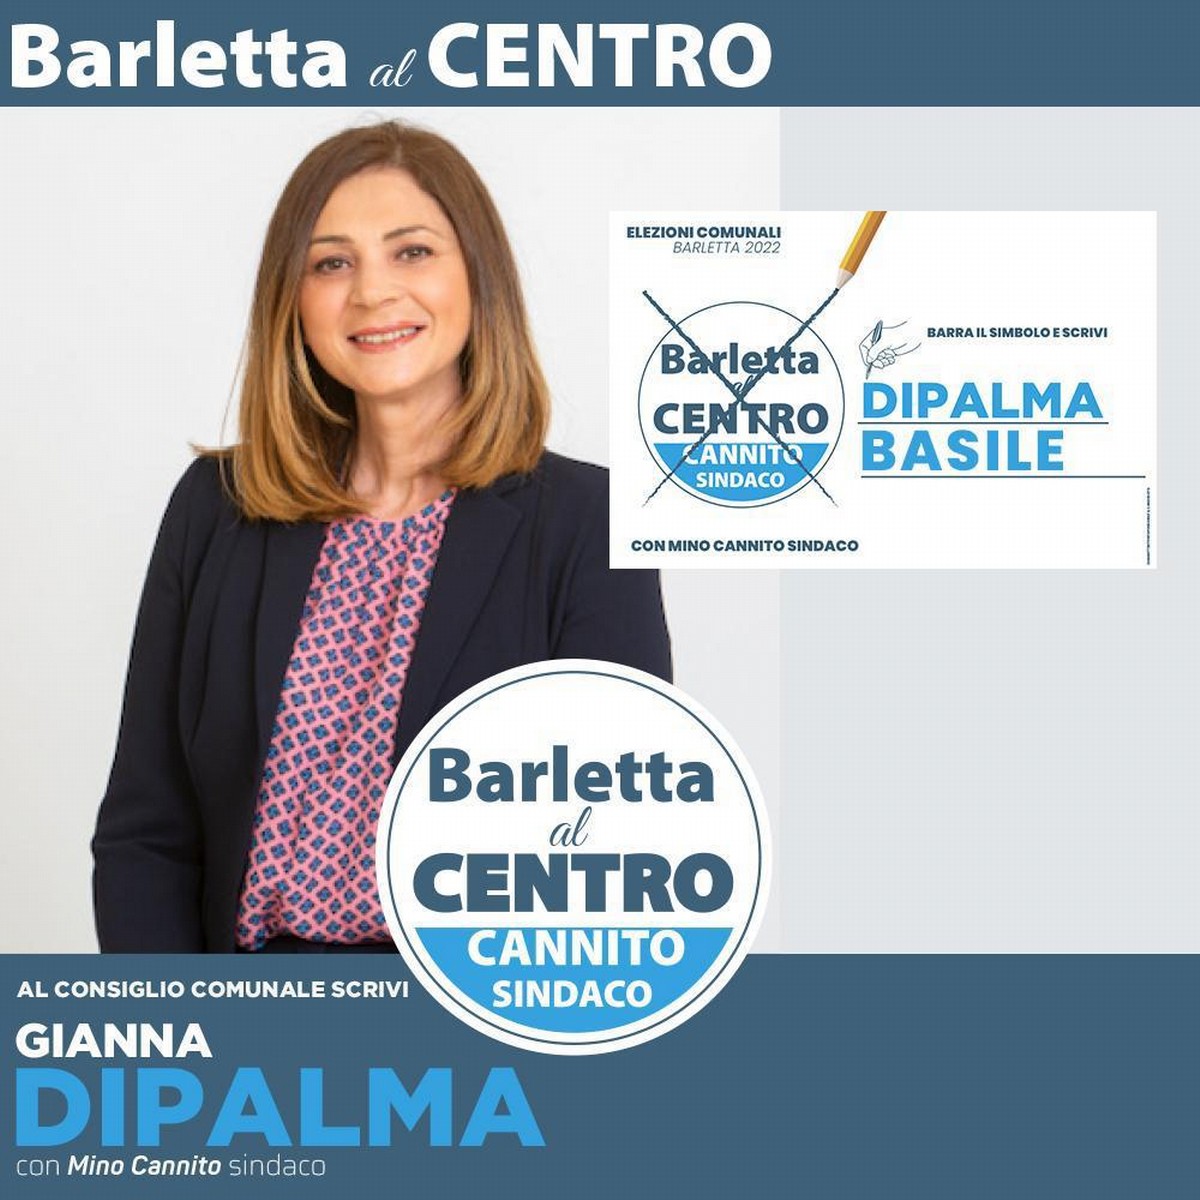 Gianna Dipalma candidata nella lista "Barletta al centro"